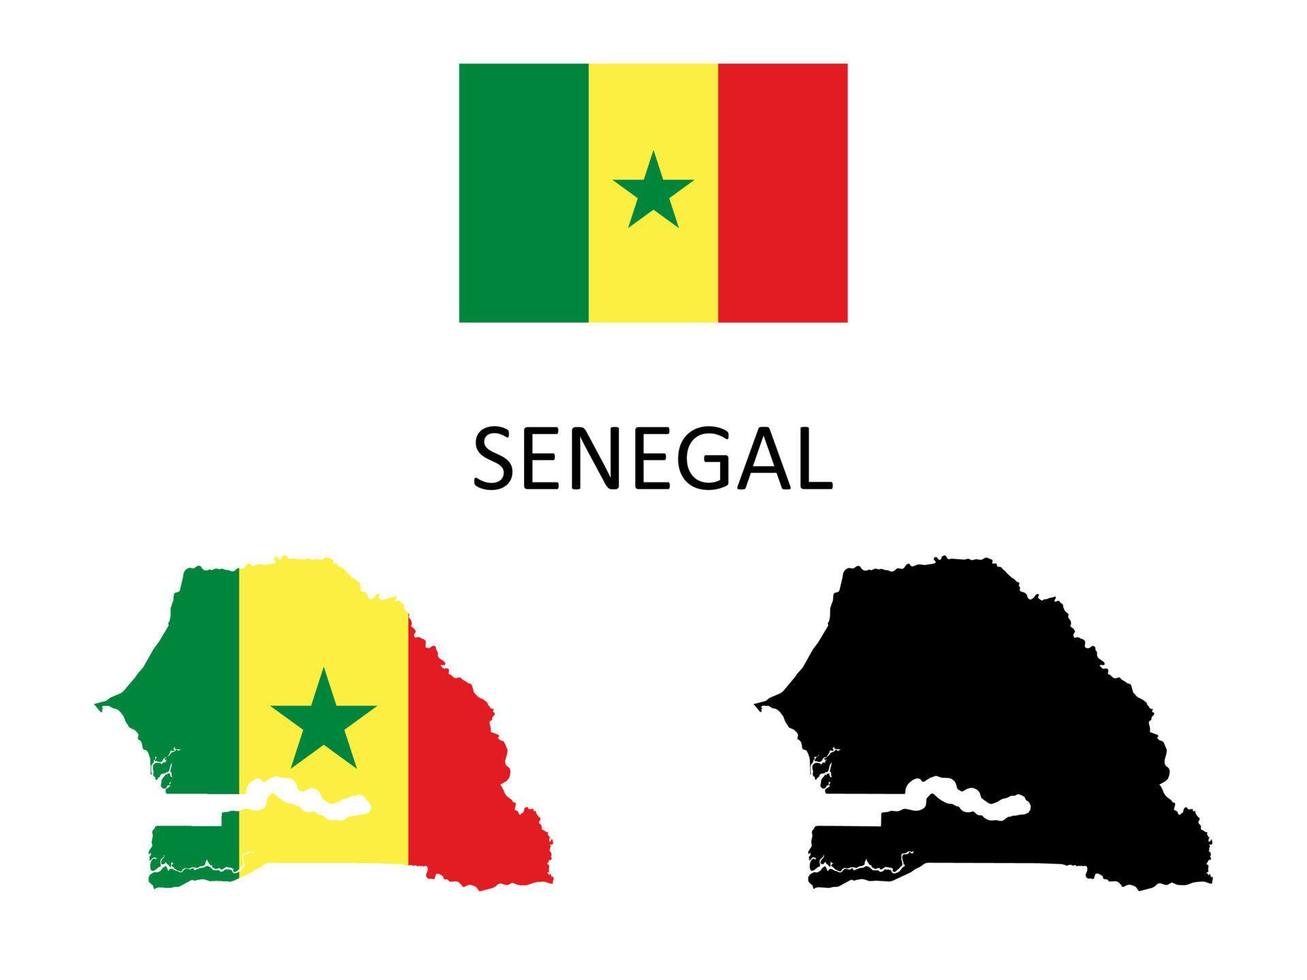 Senegal bandiera e carta geografica illustrazione vettore